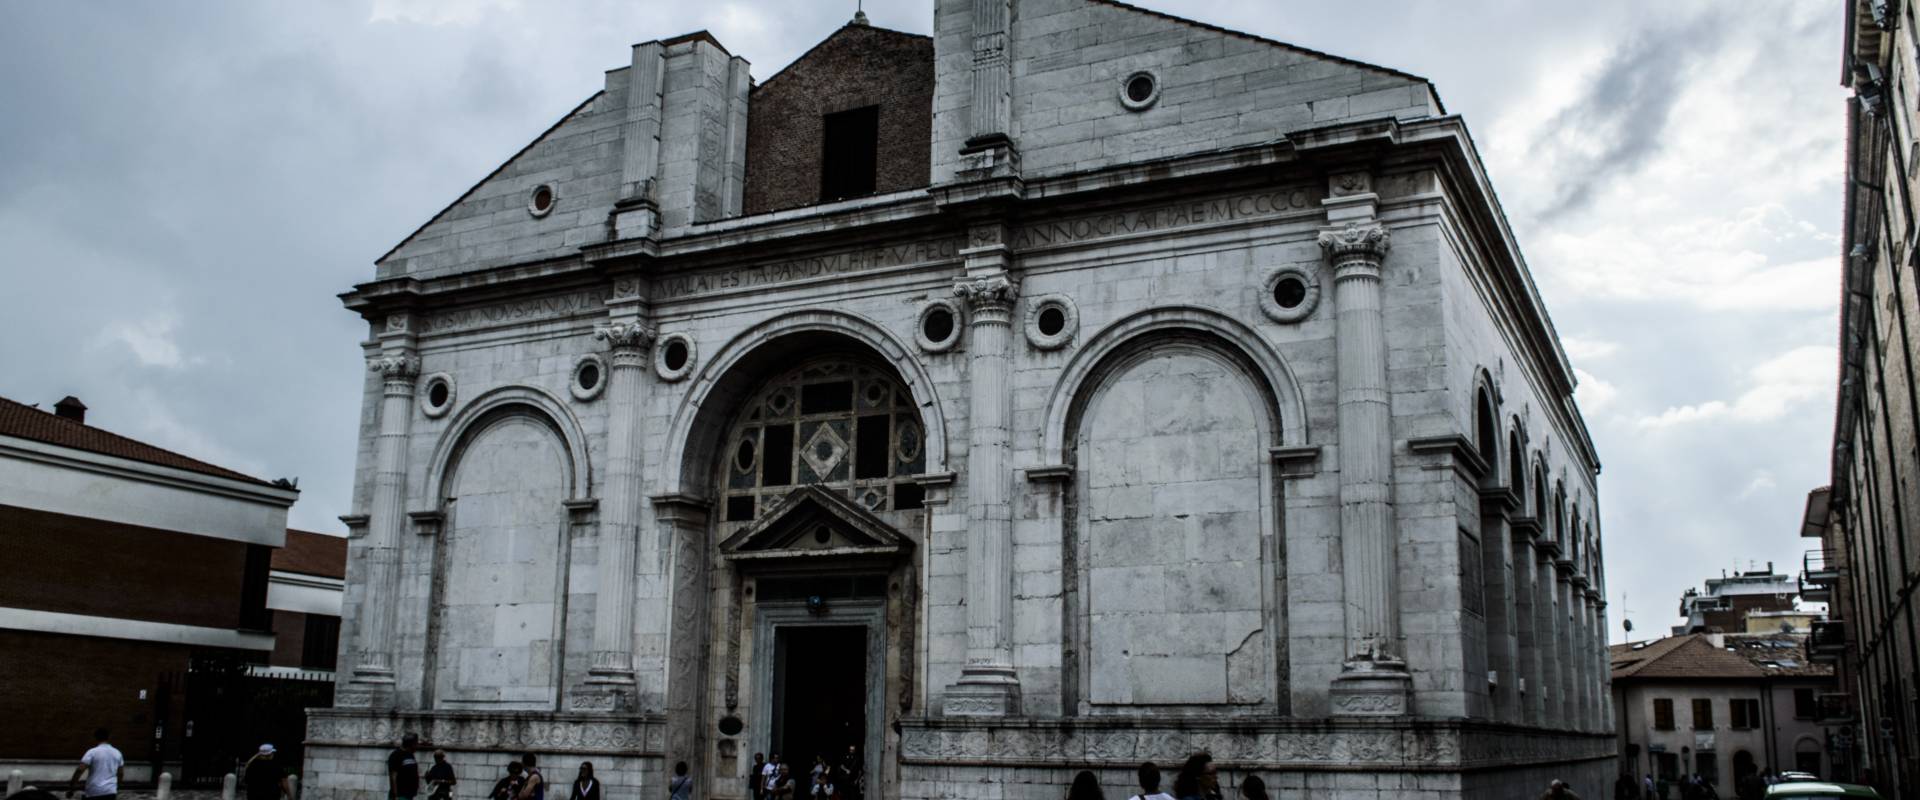 Tempio Malatestiano di Rimini foto di Carlo Salvato